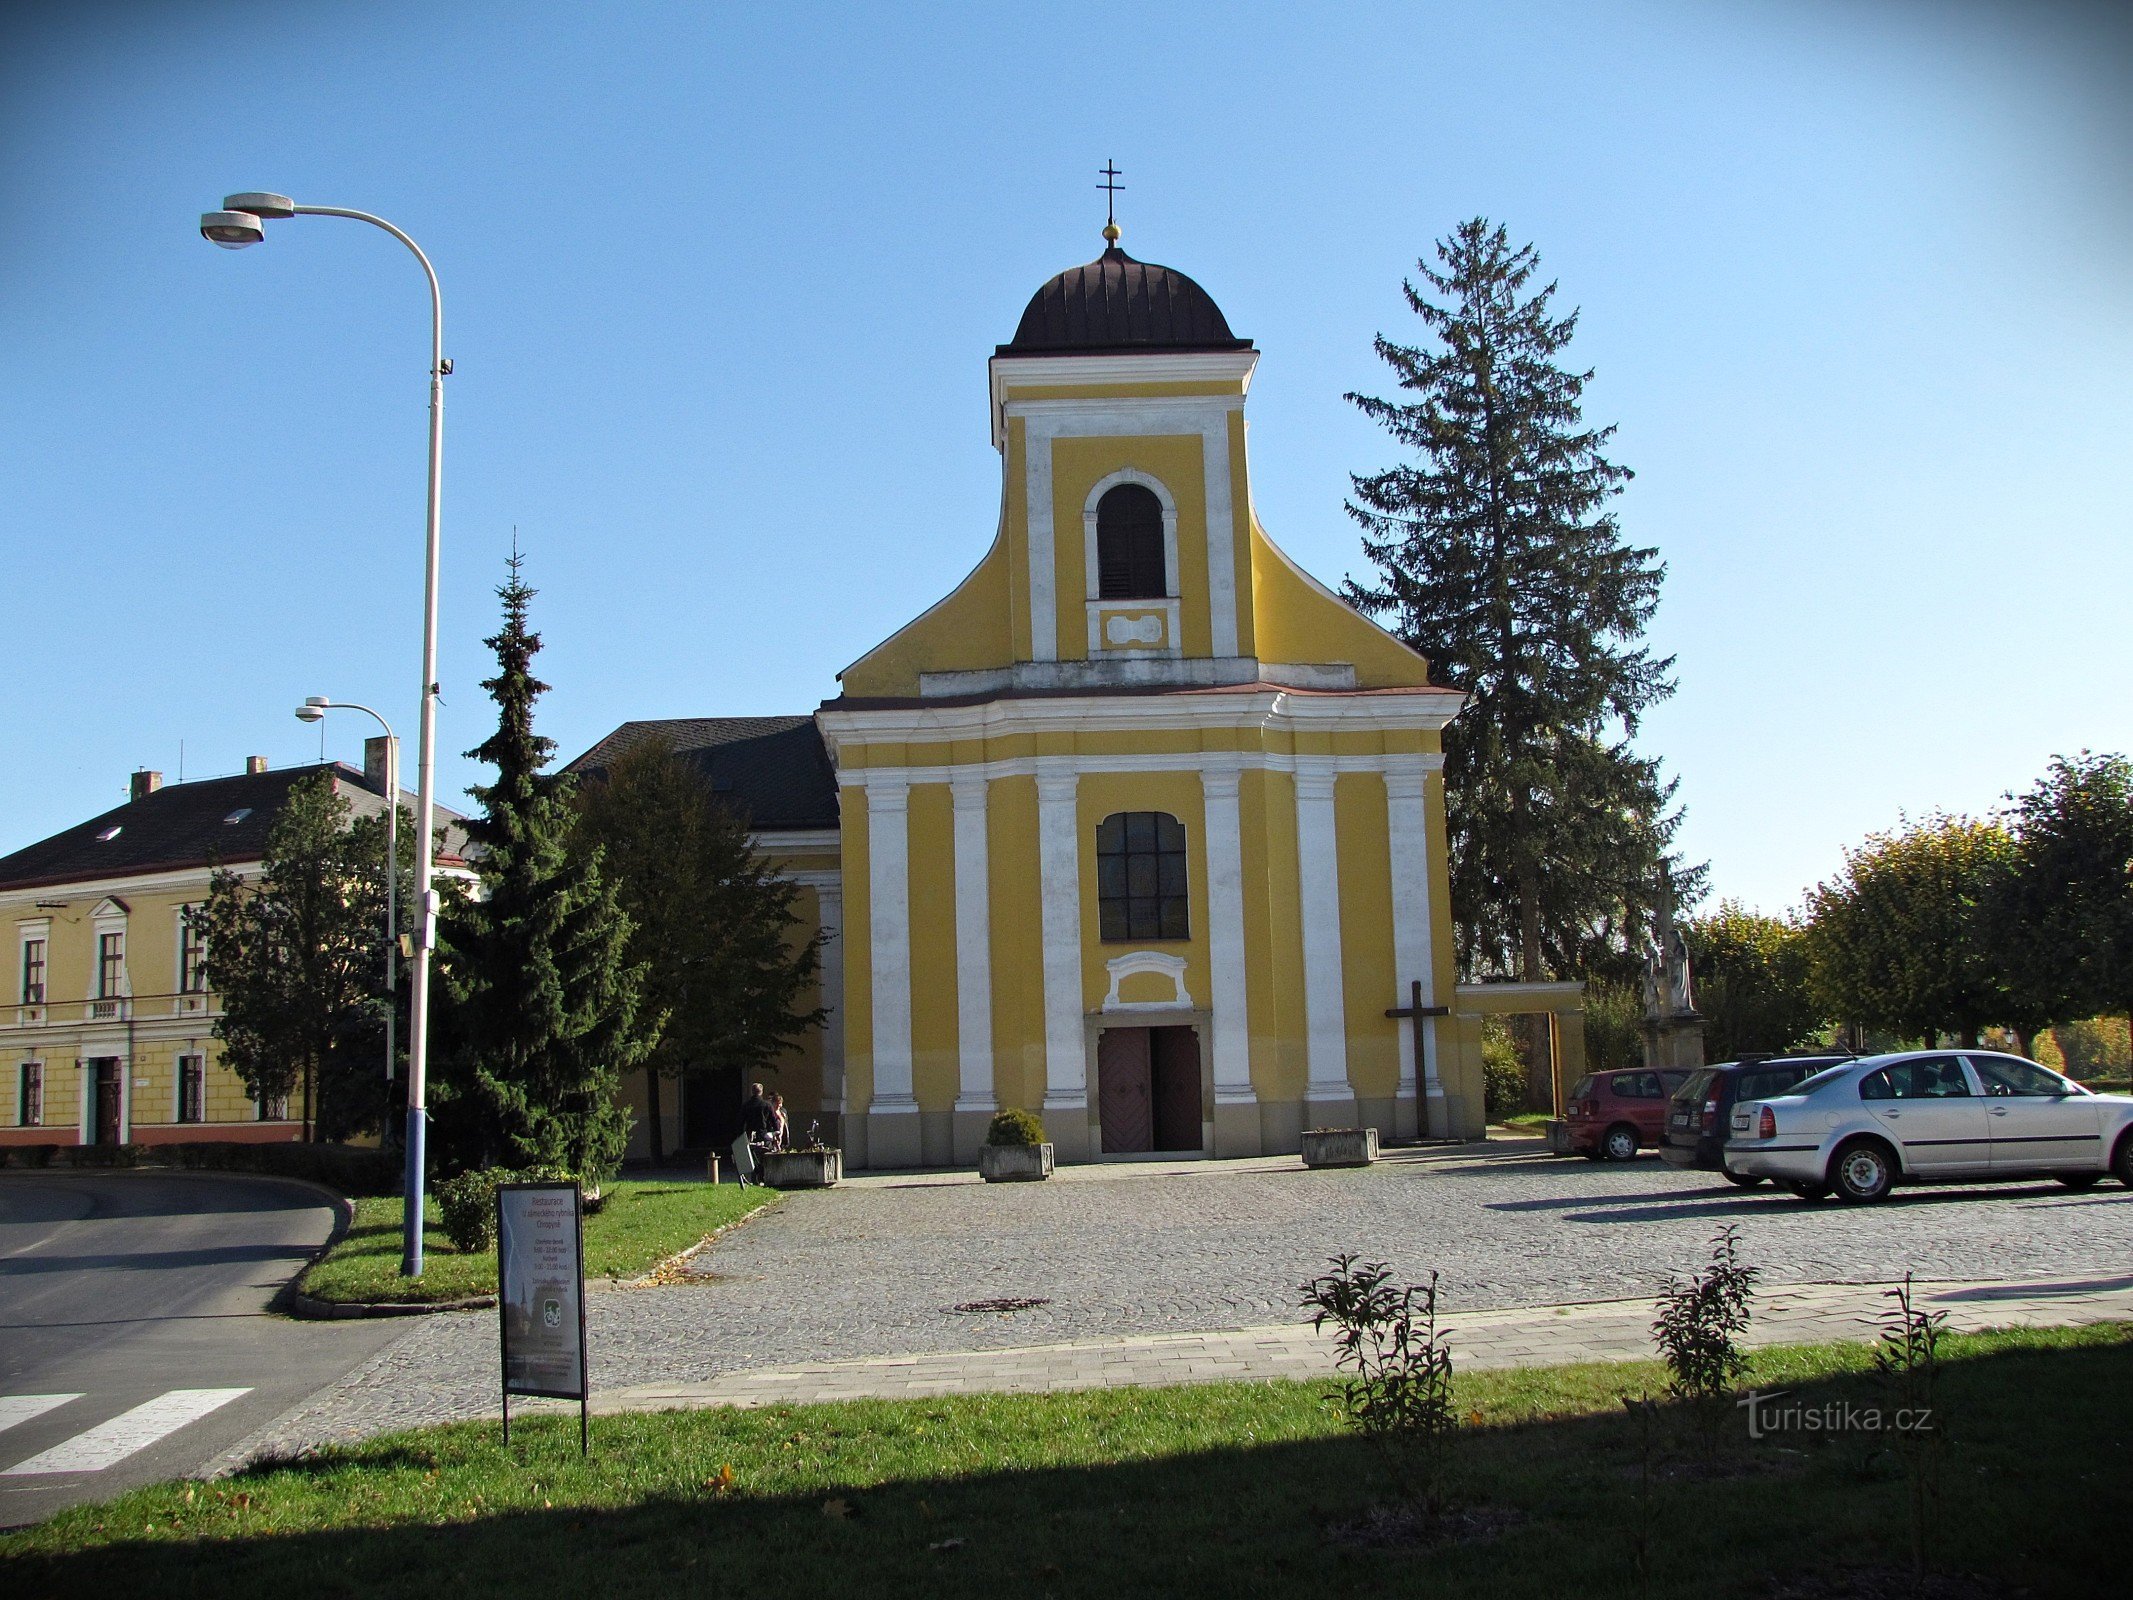 Chropyně - crkva sv. Giljí